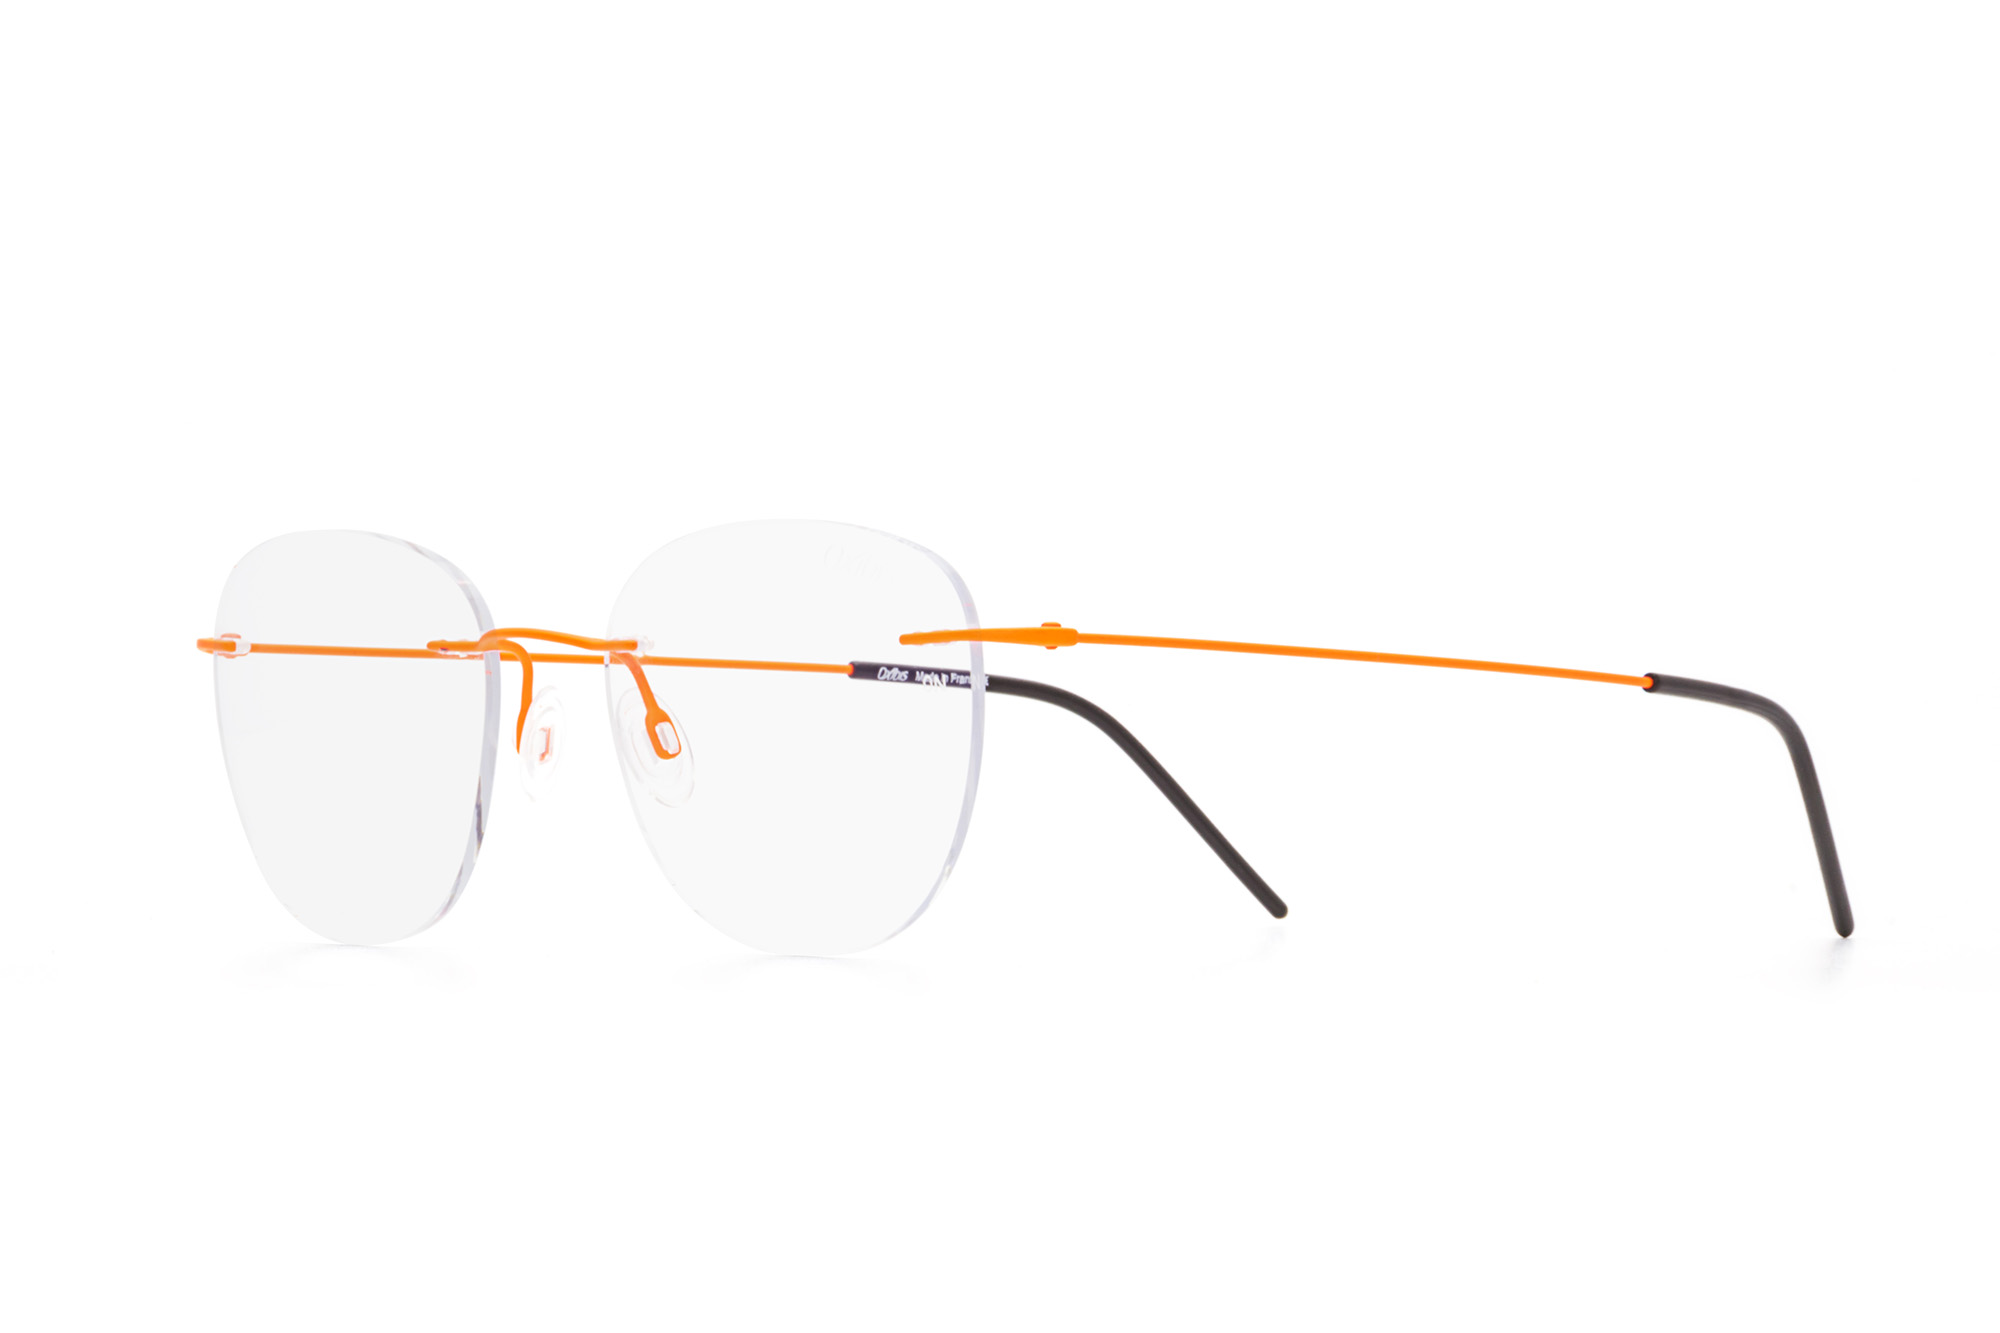 Kullanıma hazır optik tarzda işlenmiş camları ve optik uyumlu çerçevesiyle Oxibis Zef ZP7C9 50 orta ekartman neon turuncu renkli dikdörtgen model çerçevesiz unisex gözlüğü optisyen veya gözlükçülerin sunacağı numarasız veya numaralı cam özelleştirmeleriyle size en yakın gözlükçüden satın alabilirsiniz.